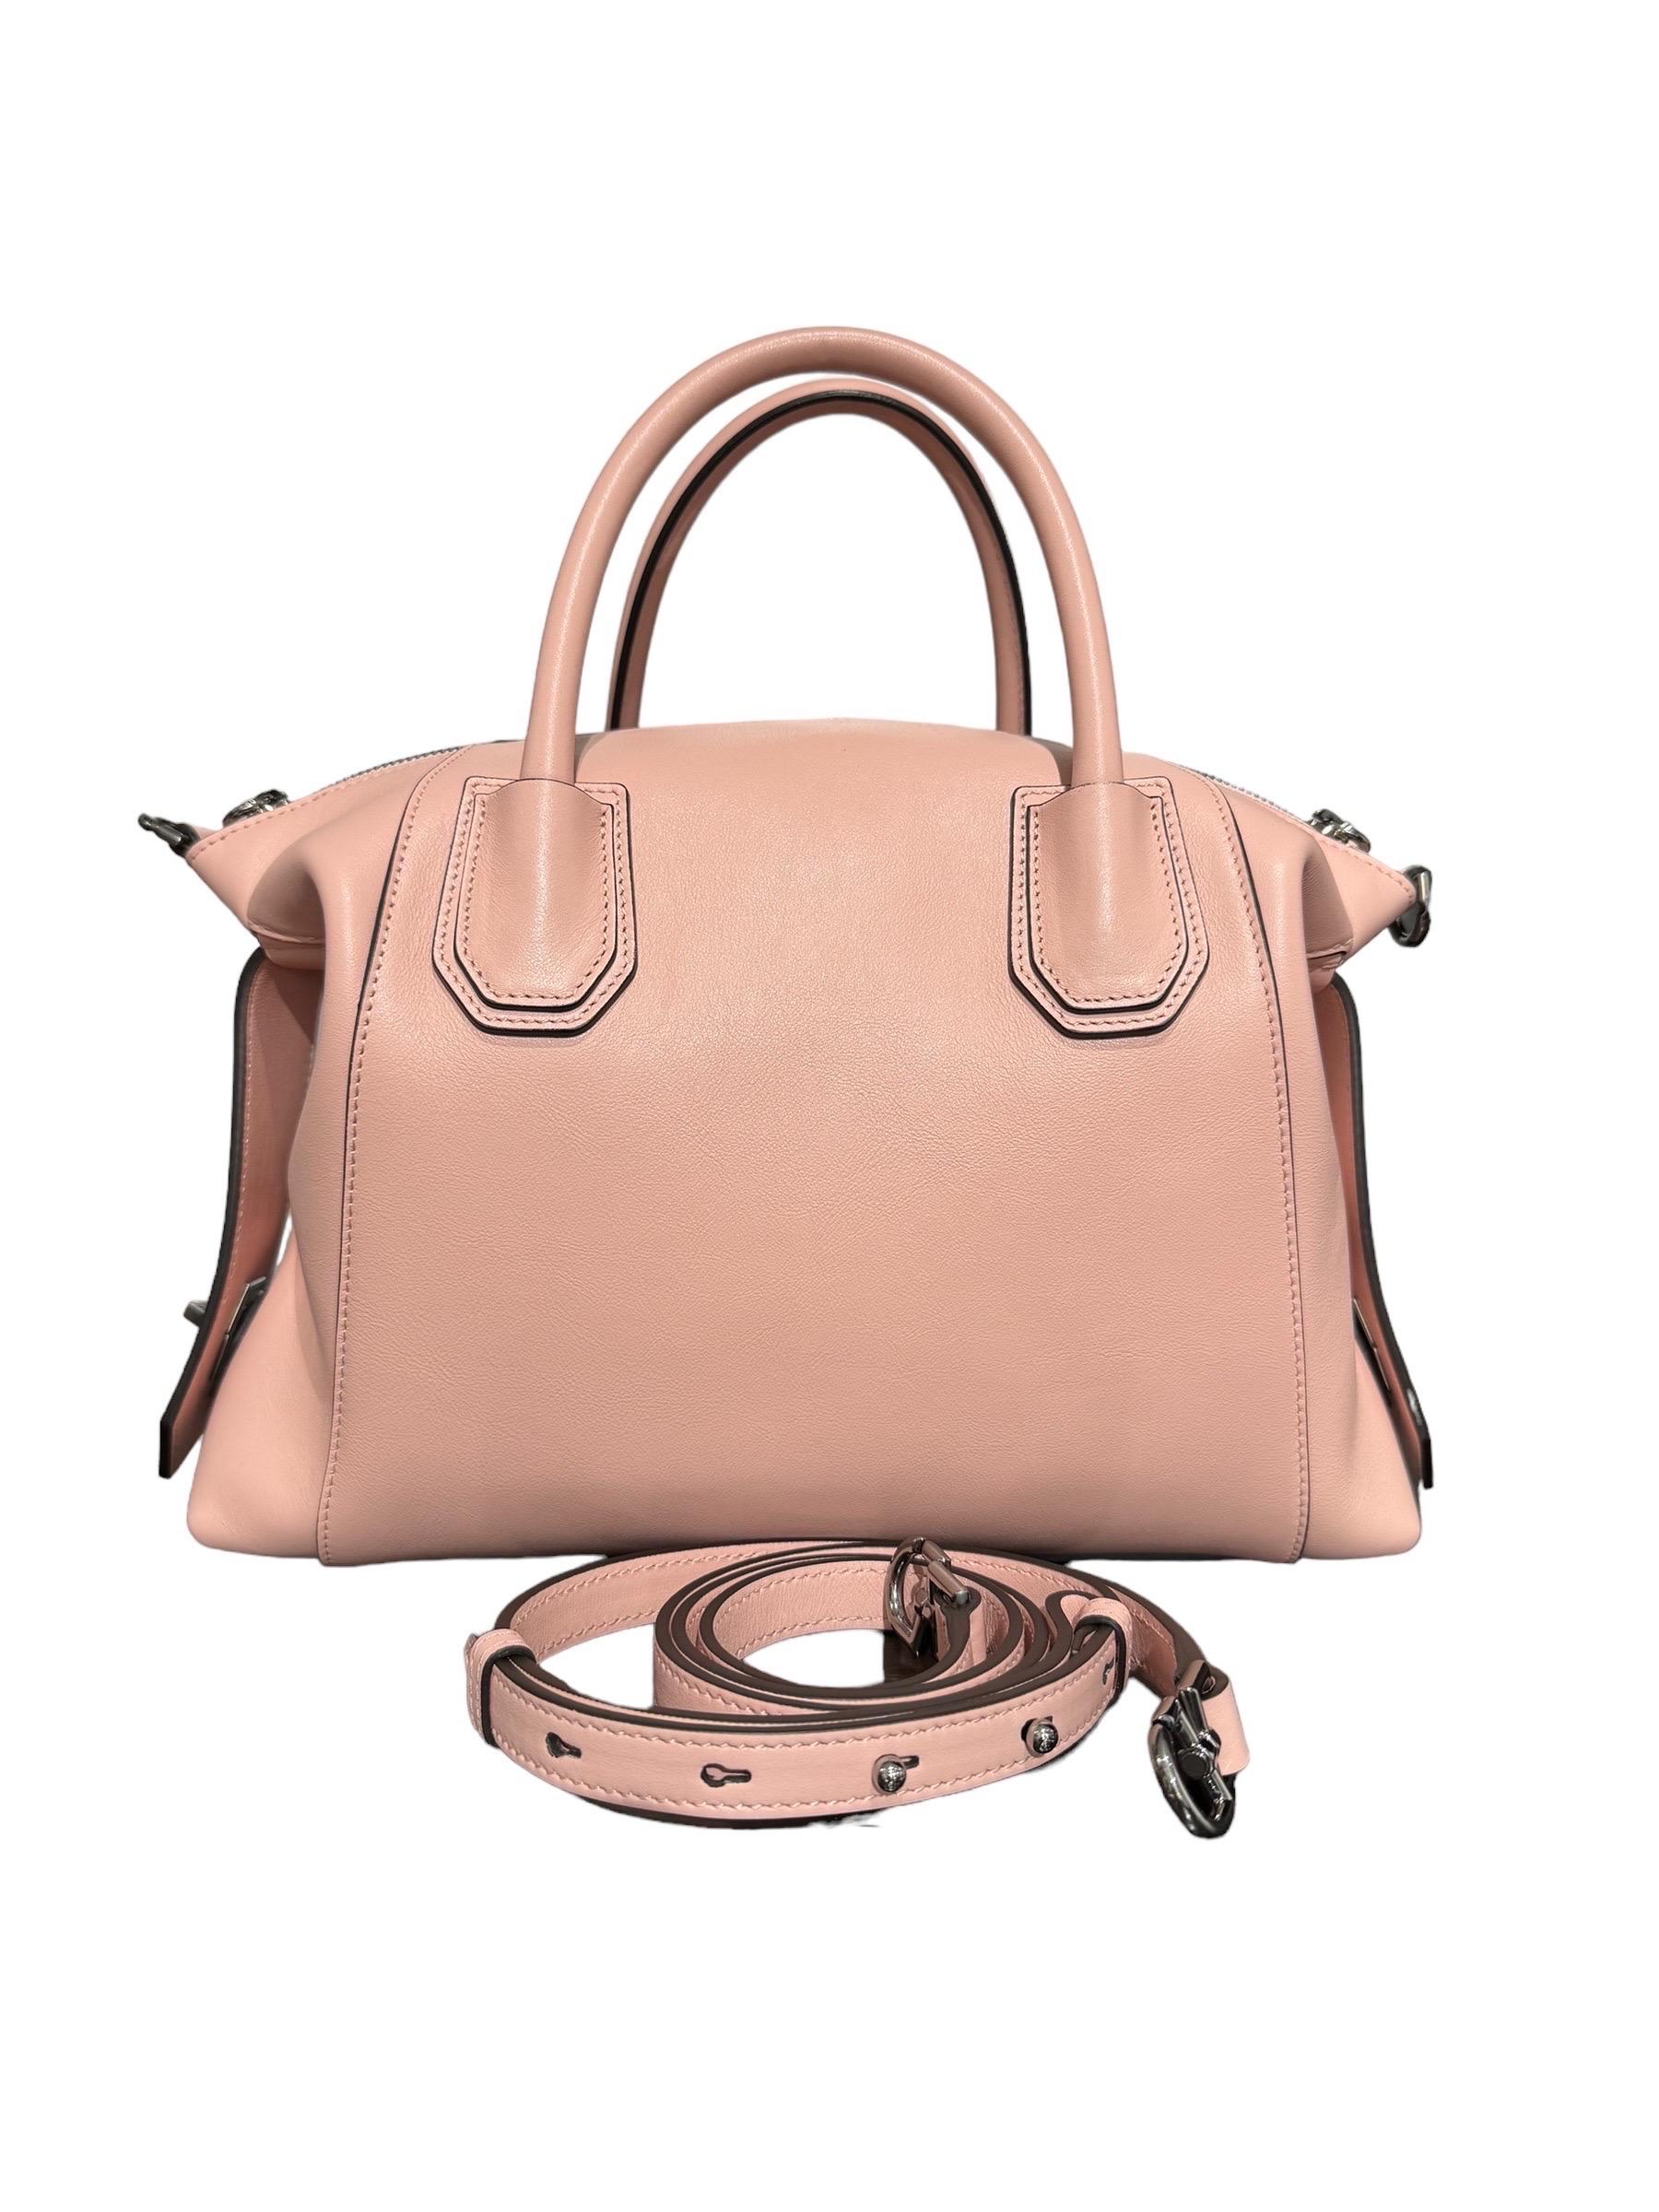 Borsa firmata Givenchy, modello Antigona Soft, nella misura PM, realizzata in pelle nella colorazione rosa e hardware argento. Presenta due manici e una tracolla regolabile e removibile. Sulla parte frontale presenta il logo del brand a rilievo.